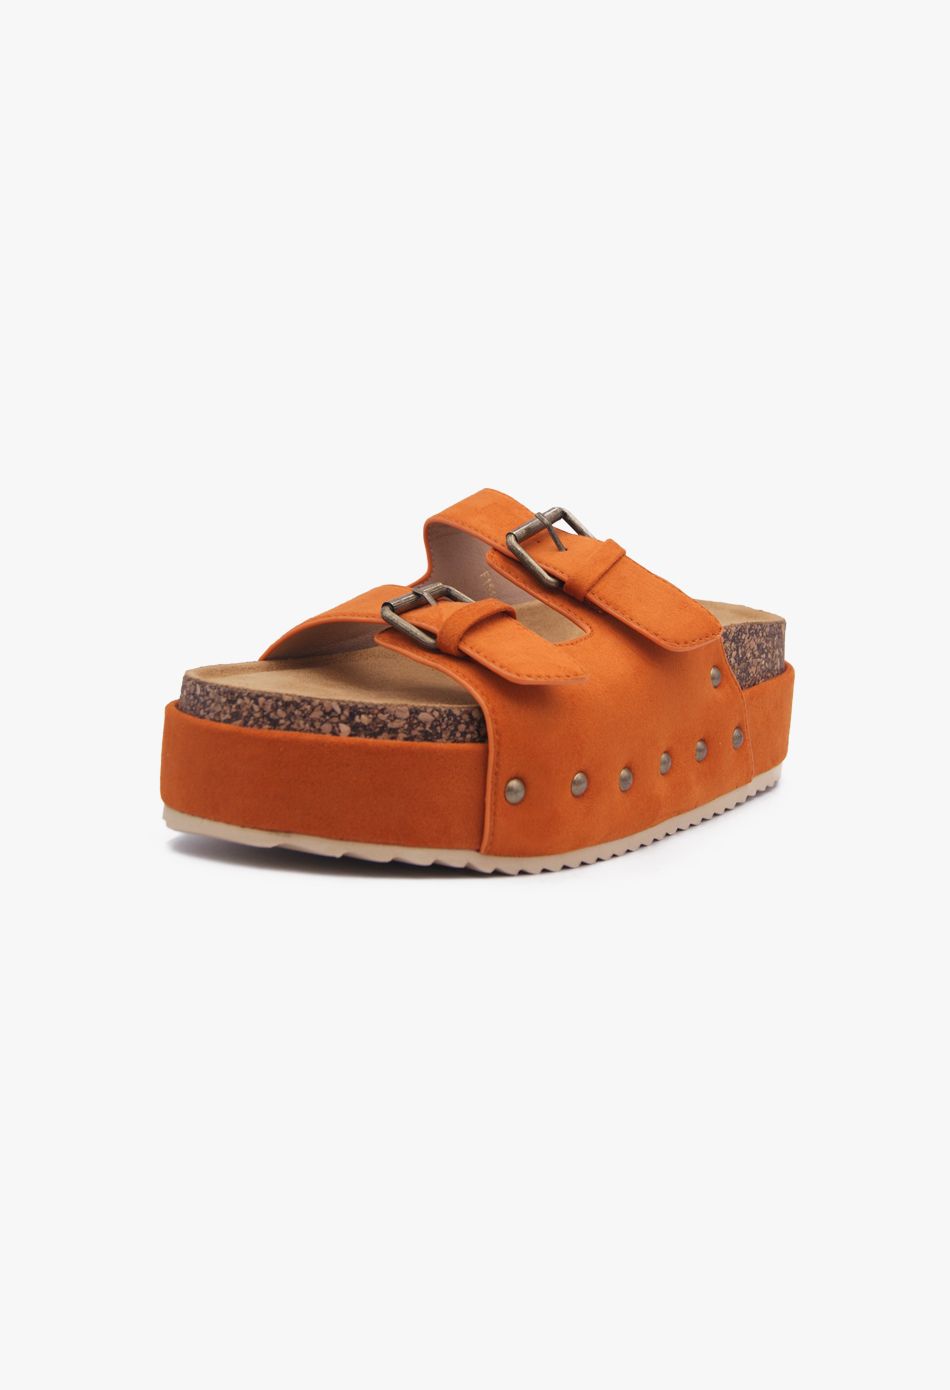 Πλατφόρμες Suede με Δύο Τόκες & Τρουκς Πορτοκαλί / F1511-orange Ανοιχτά Παπούτσια joya.gr